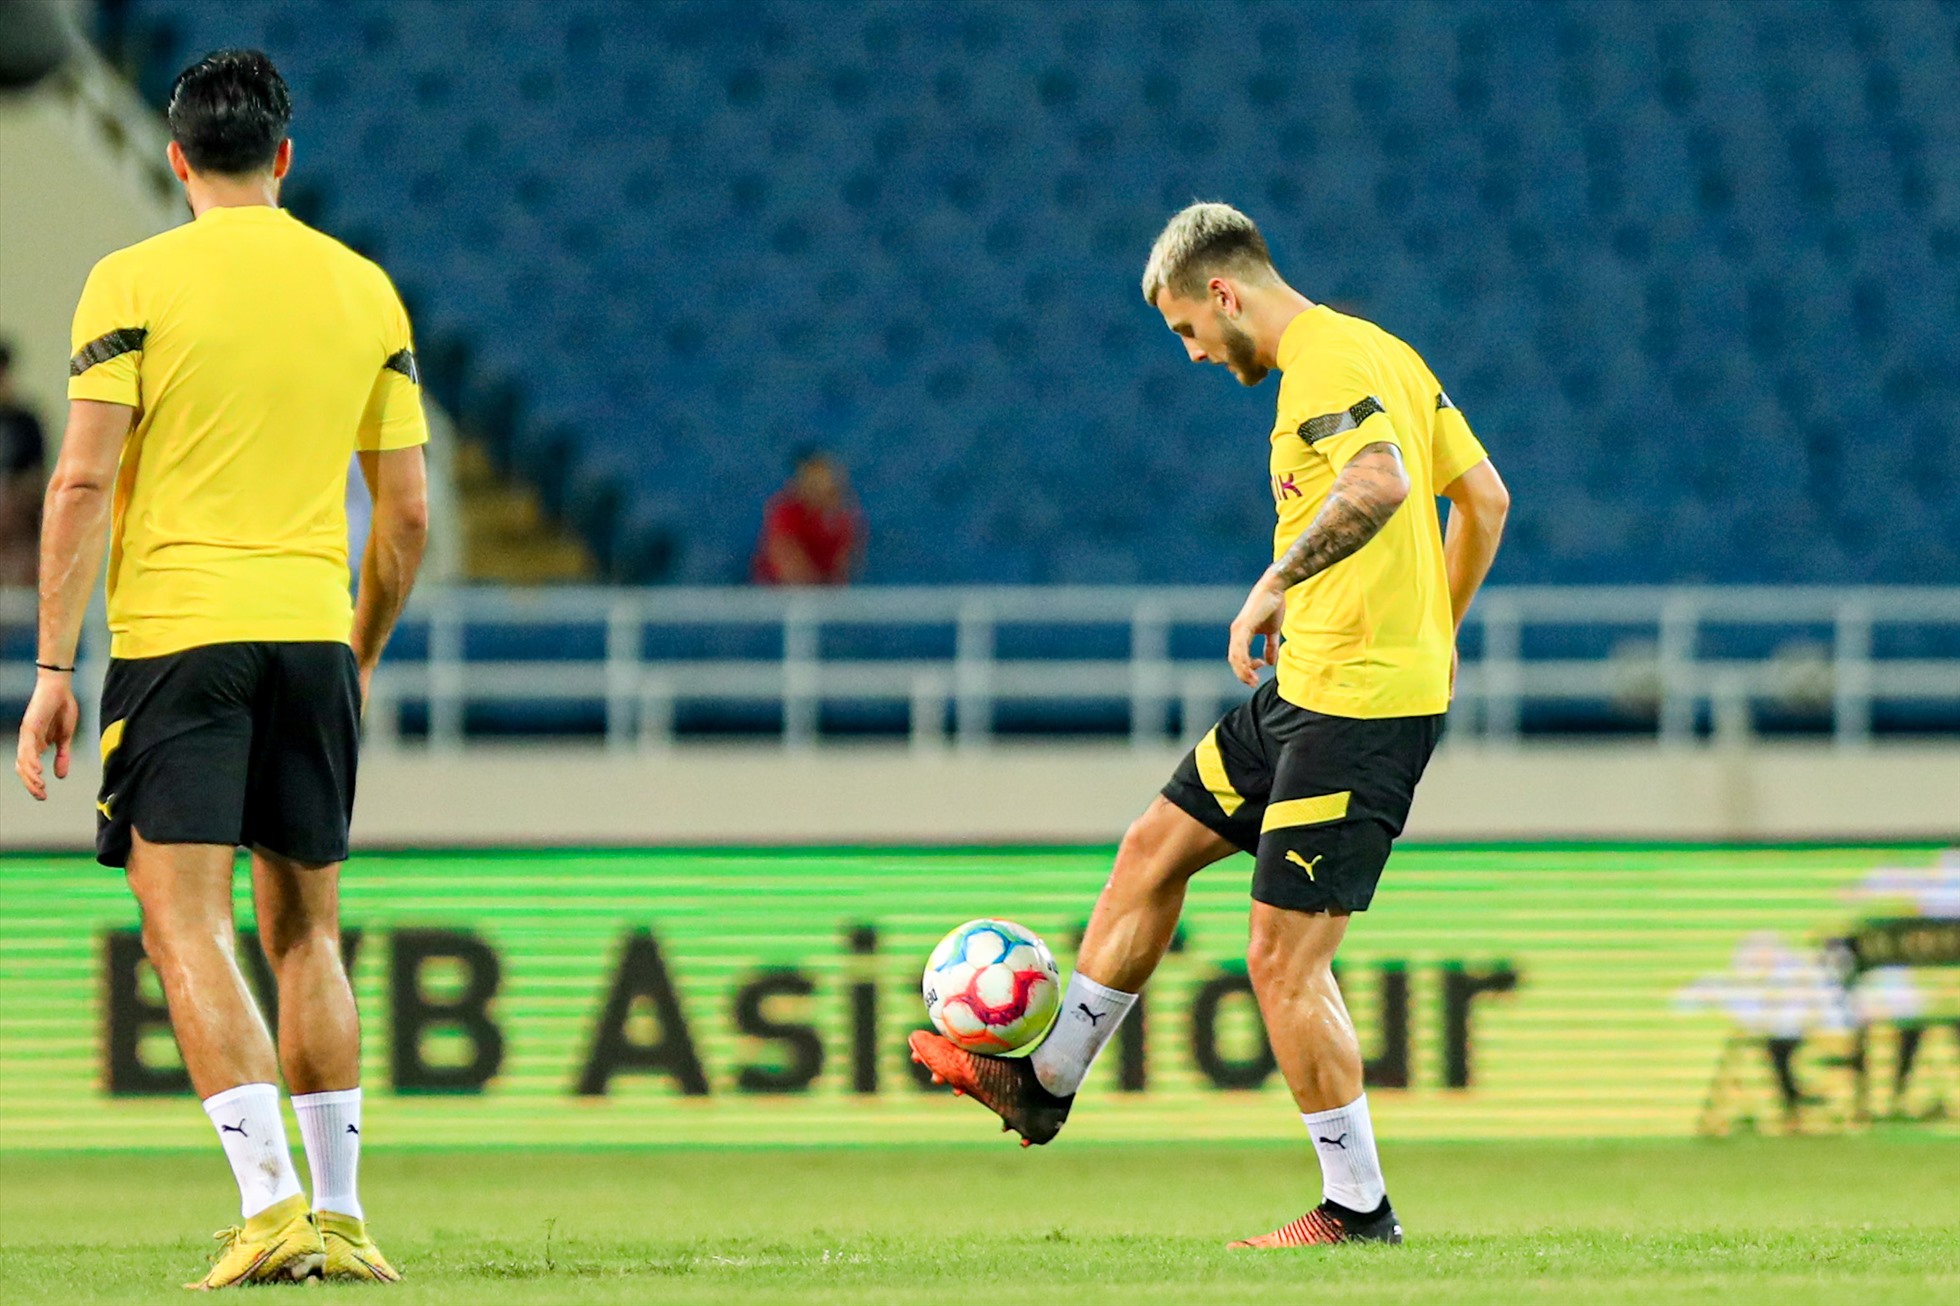 Trận đấu giữa đội tuyển Việt Nam và câu lạc bộ Borussia Dortmund diễn ra lúc 19h00 tối mai 30.11. Huấn luyện viên Park Hang-seo và các học trò quyết tâm có kết quả tốt trước đại diện nước Đức.